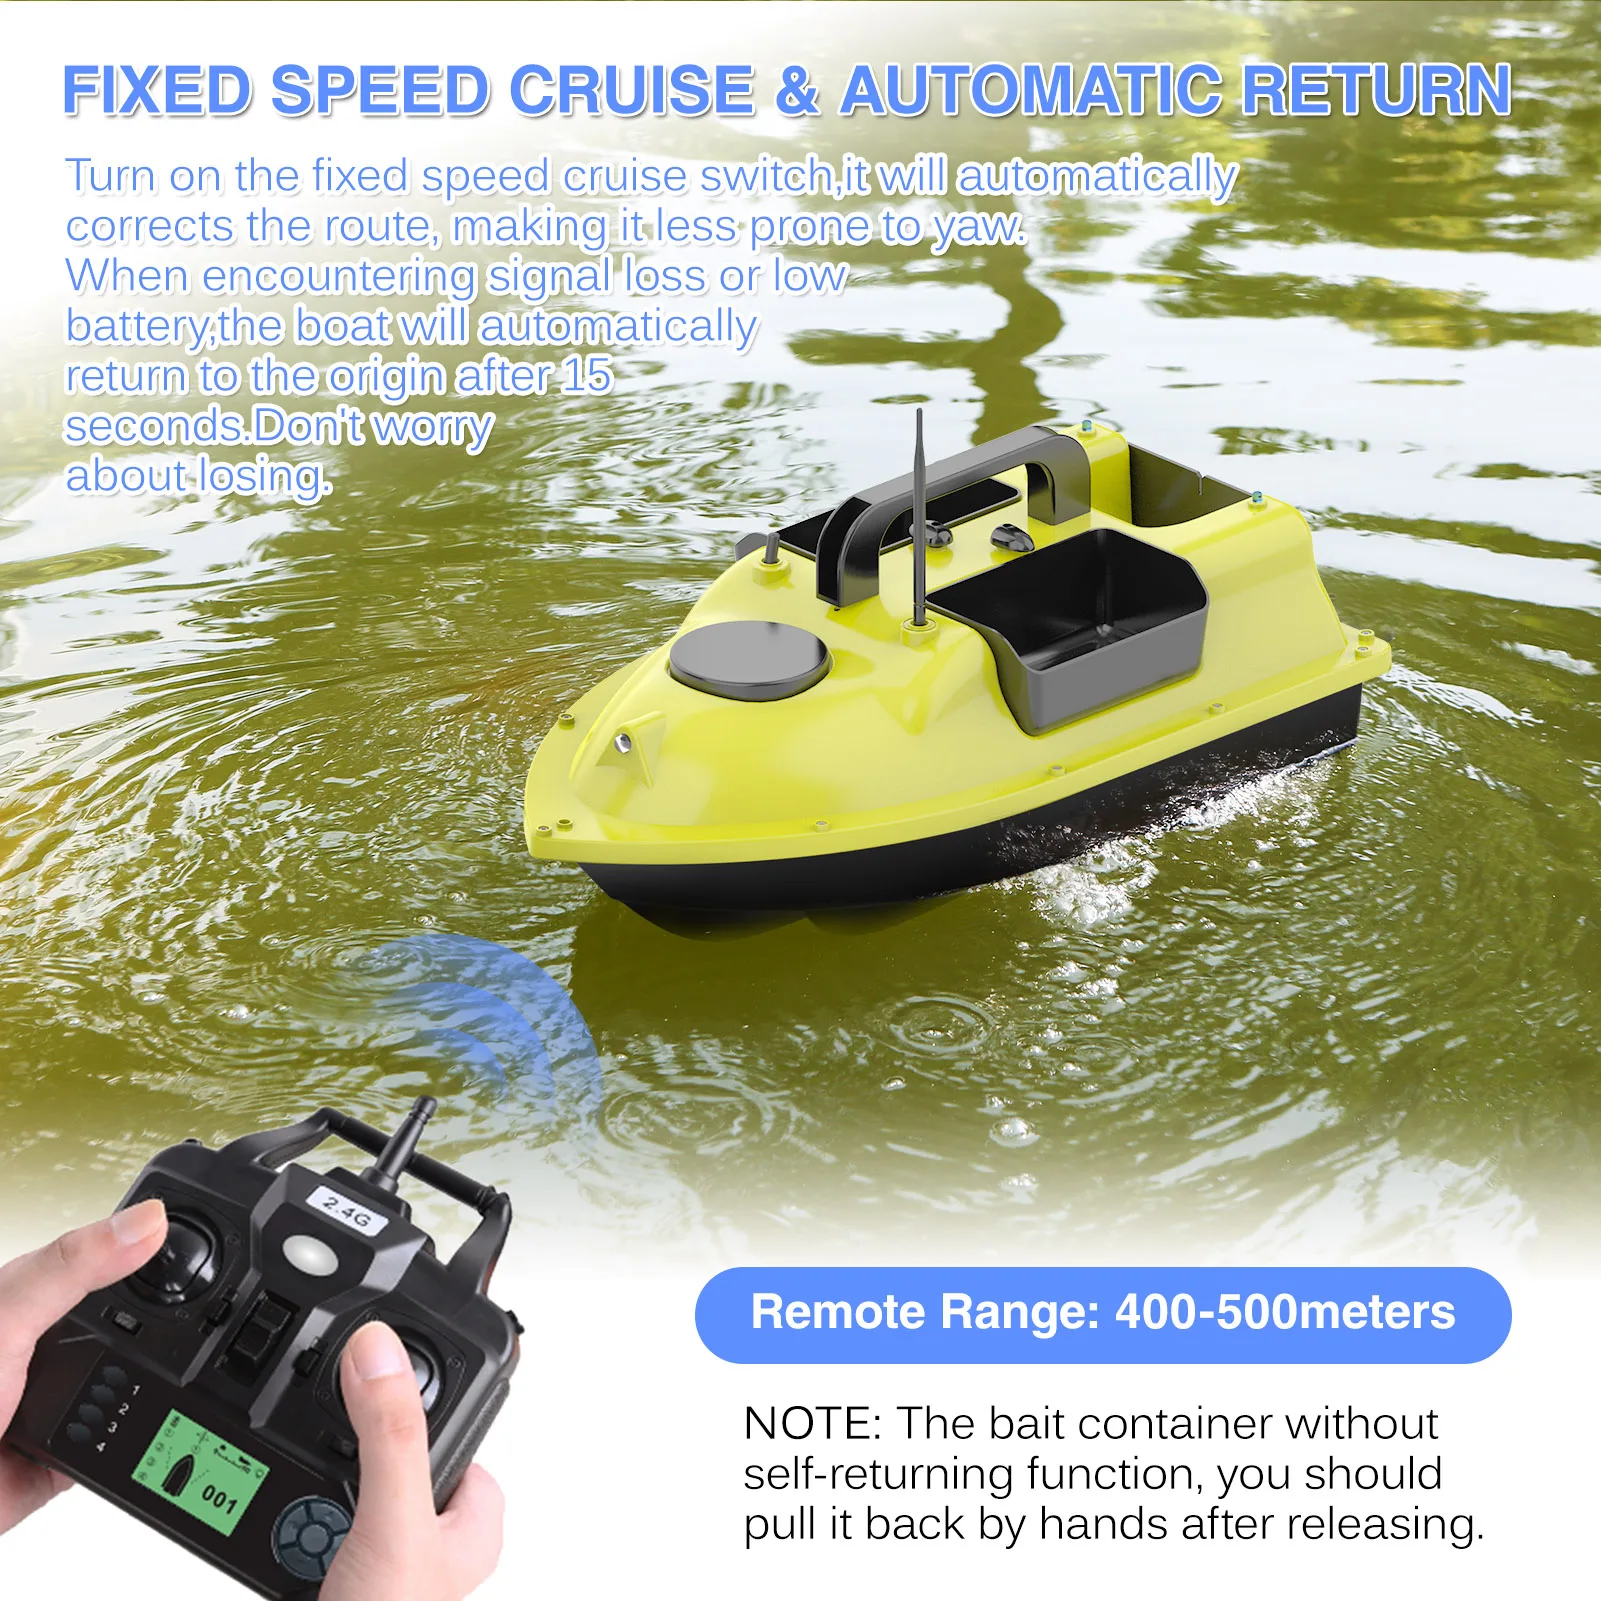 

GPS рыболовная умная RC приманка лодка с 3 контейнерами для наживки Автоматическая Беспроводная приманка лодка с 400-500 м дистанционный диапазо...